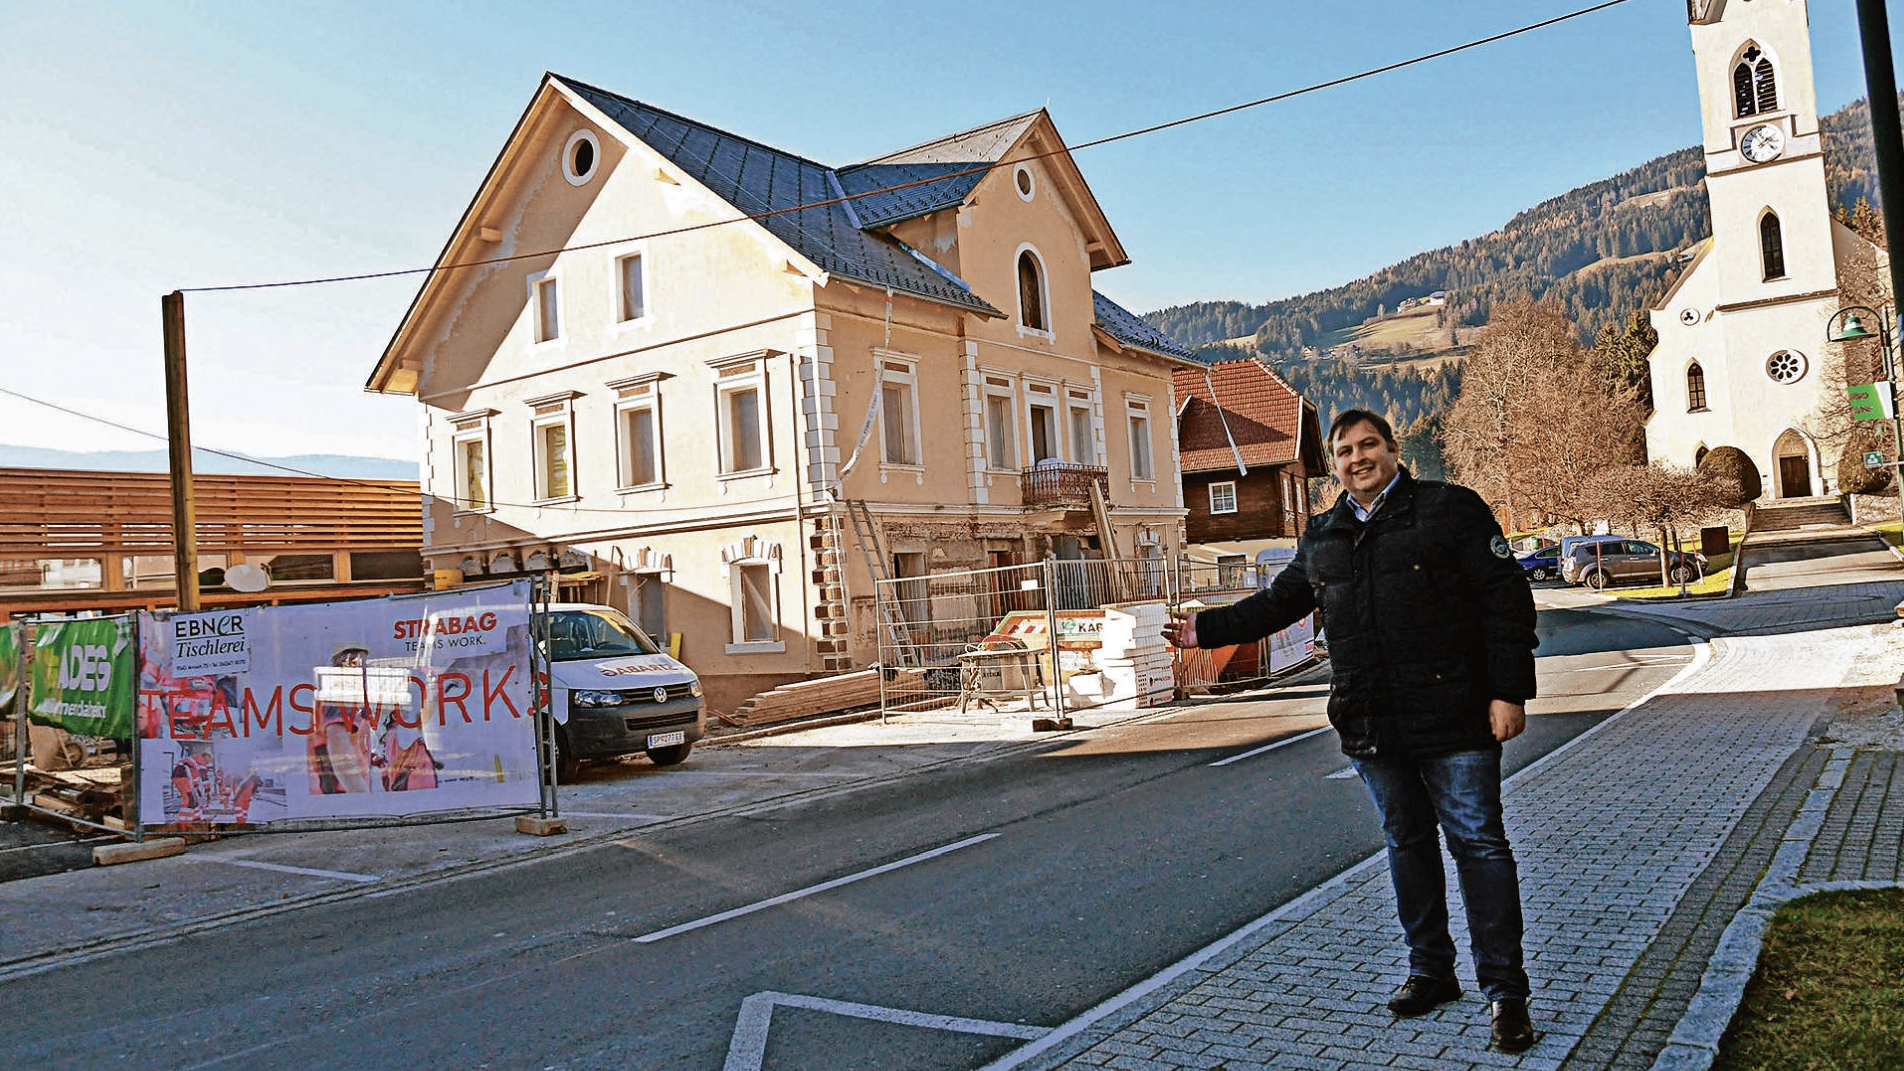 Bürgermeister Gerald Ebner freut sich über das Projekt in der Gemeinde. (Bild: Hermann Sobe)